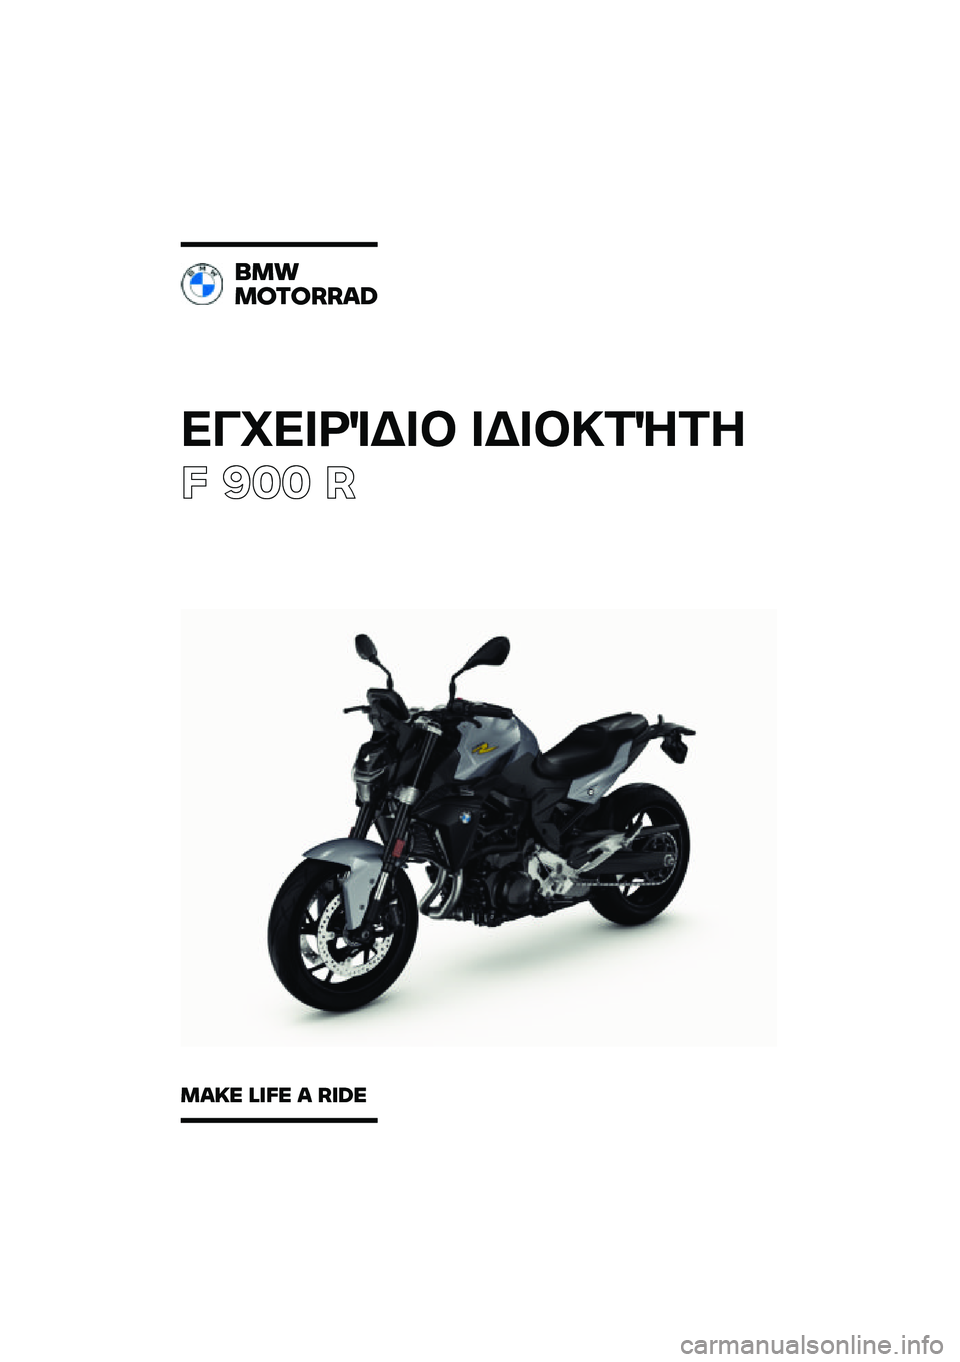 BMW MOTORRAD F 900 R 2021  Εγχειρίδιο ιδιοκτήτη (in Greek) ��������\b��	 ��\b��	�
��\f��
� ��� �
���
�������\b�	
��\b�
� �\f�
�� �\b ��
�	� 